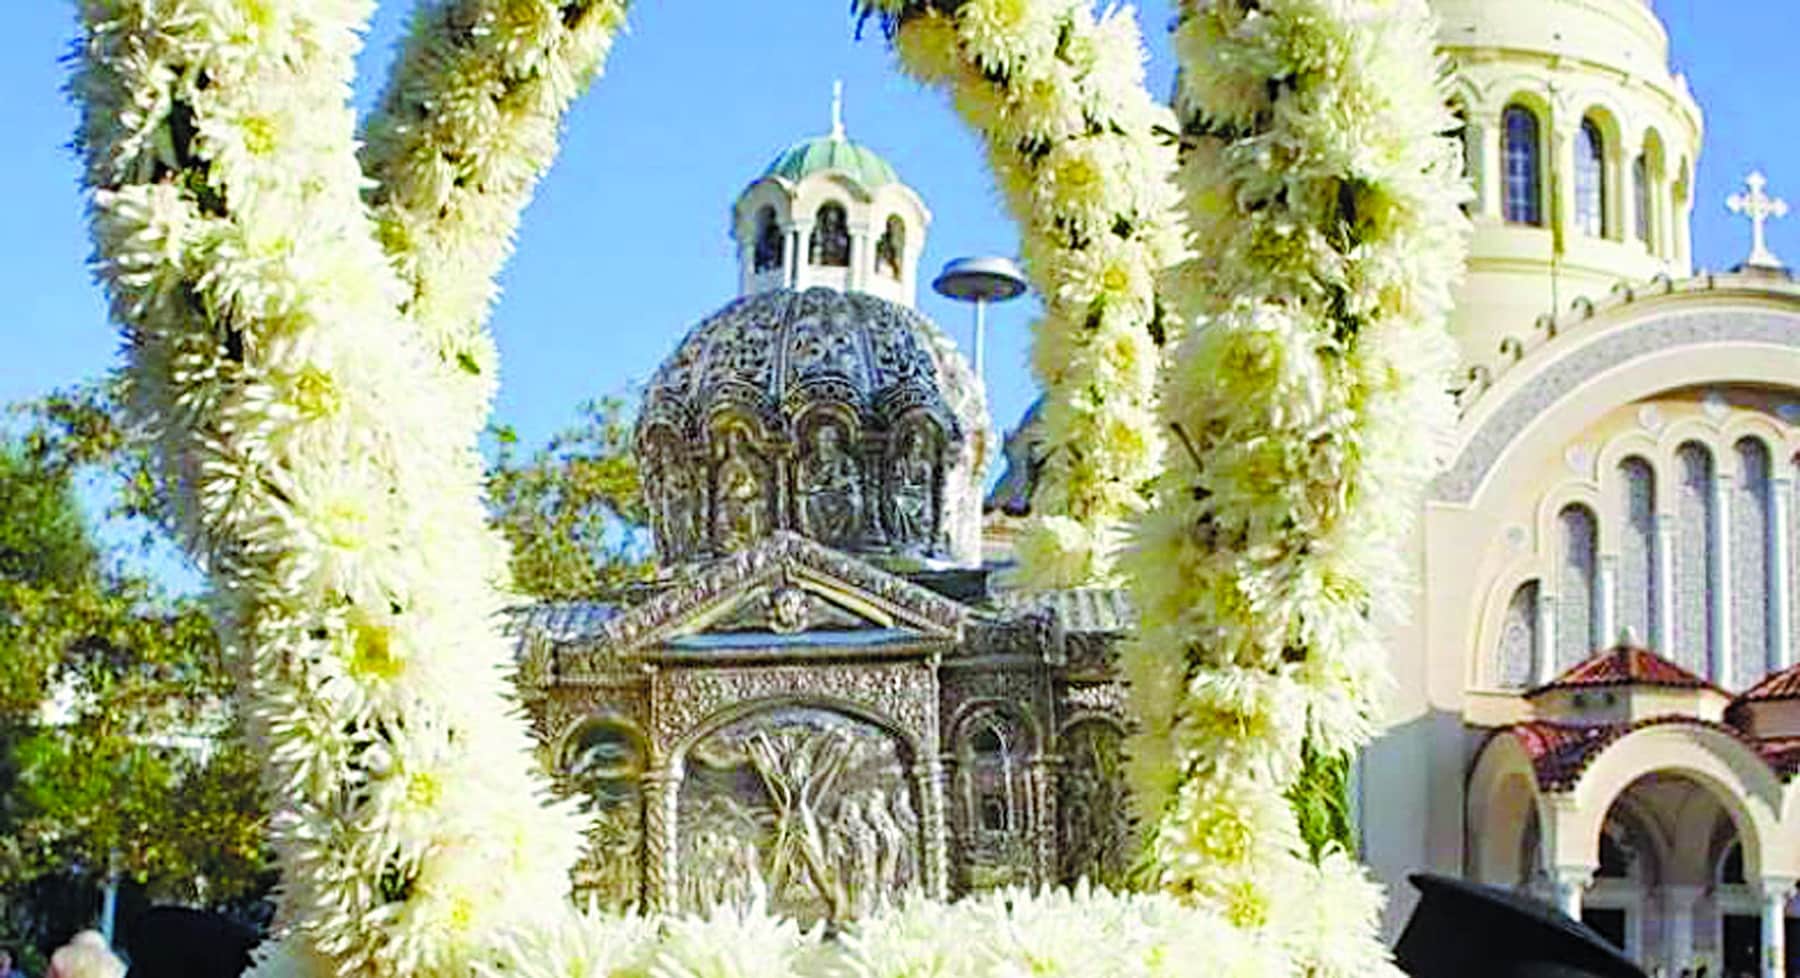 Πάτρα: Ξεκινούν σήμερα οι εορτασμοί για την 58η επέτειο από την επανακομιδή της Τιμίας Κάρας του Αποστόλου Ανδρέα